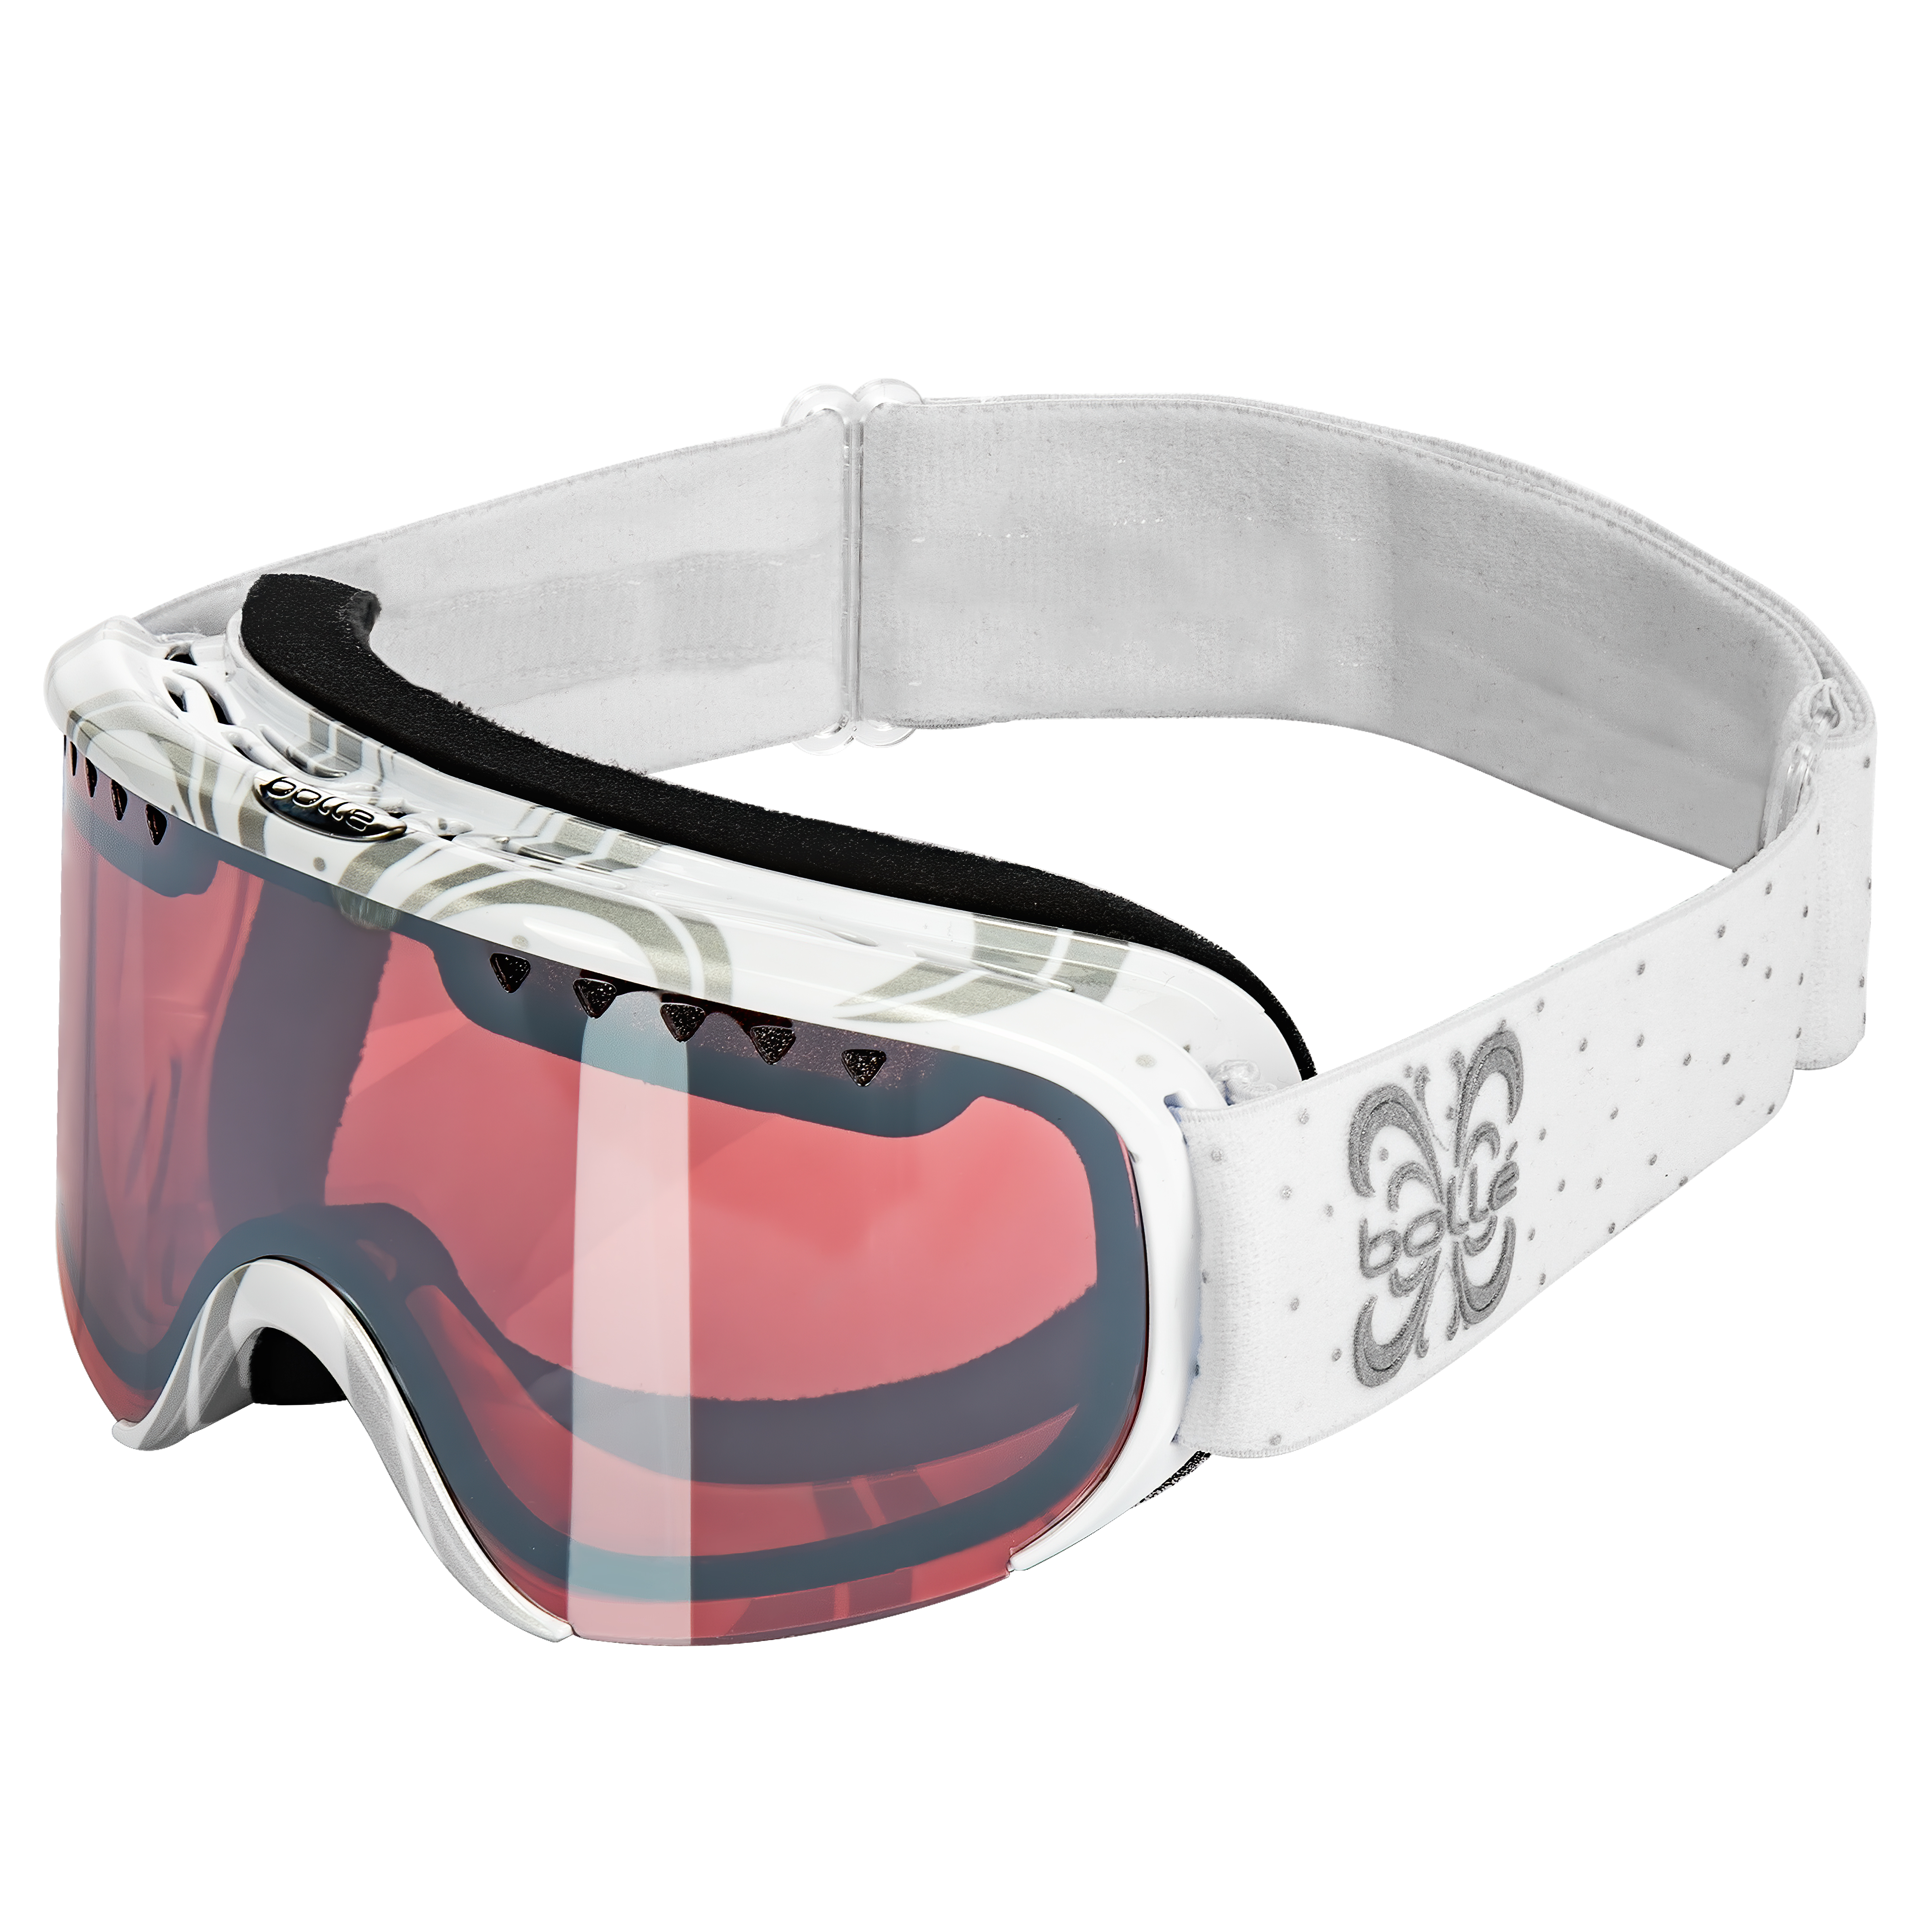 Цена лыжная маска для взрослых Bolle Scarlett Shiny White Night Vermillon Gun в Киеве